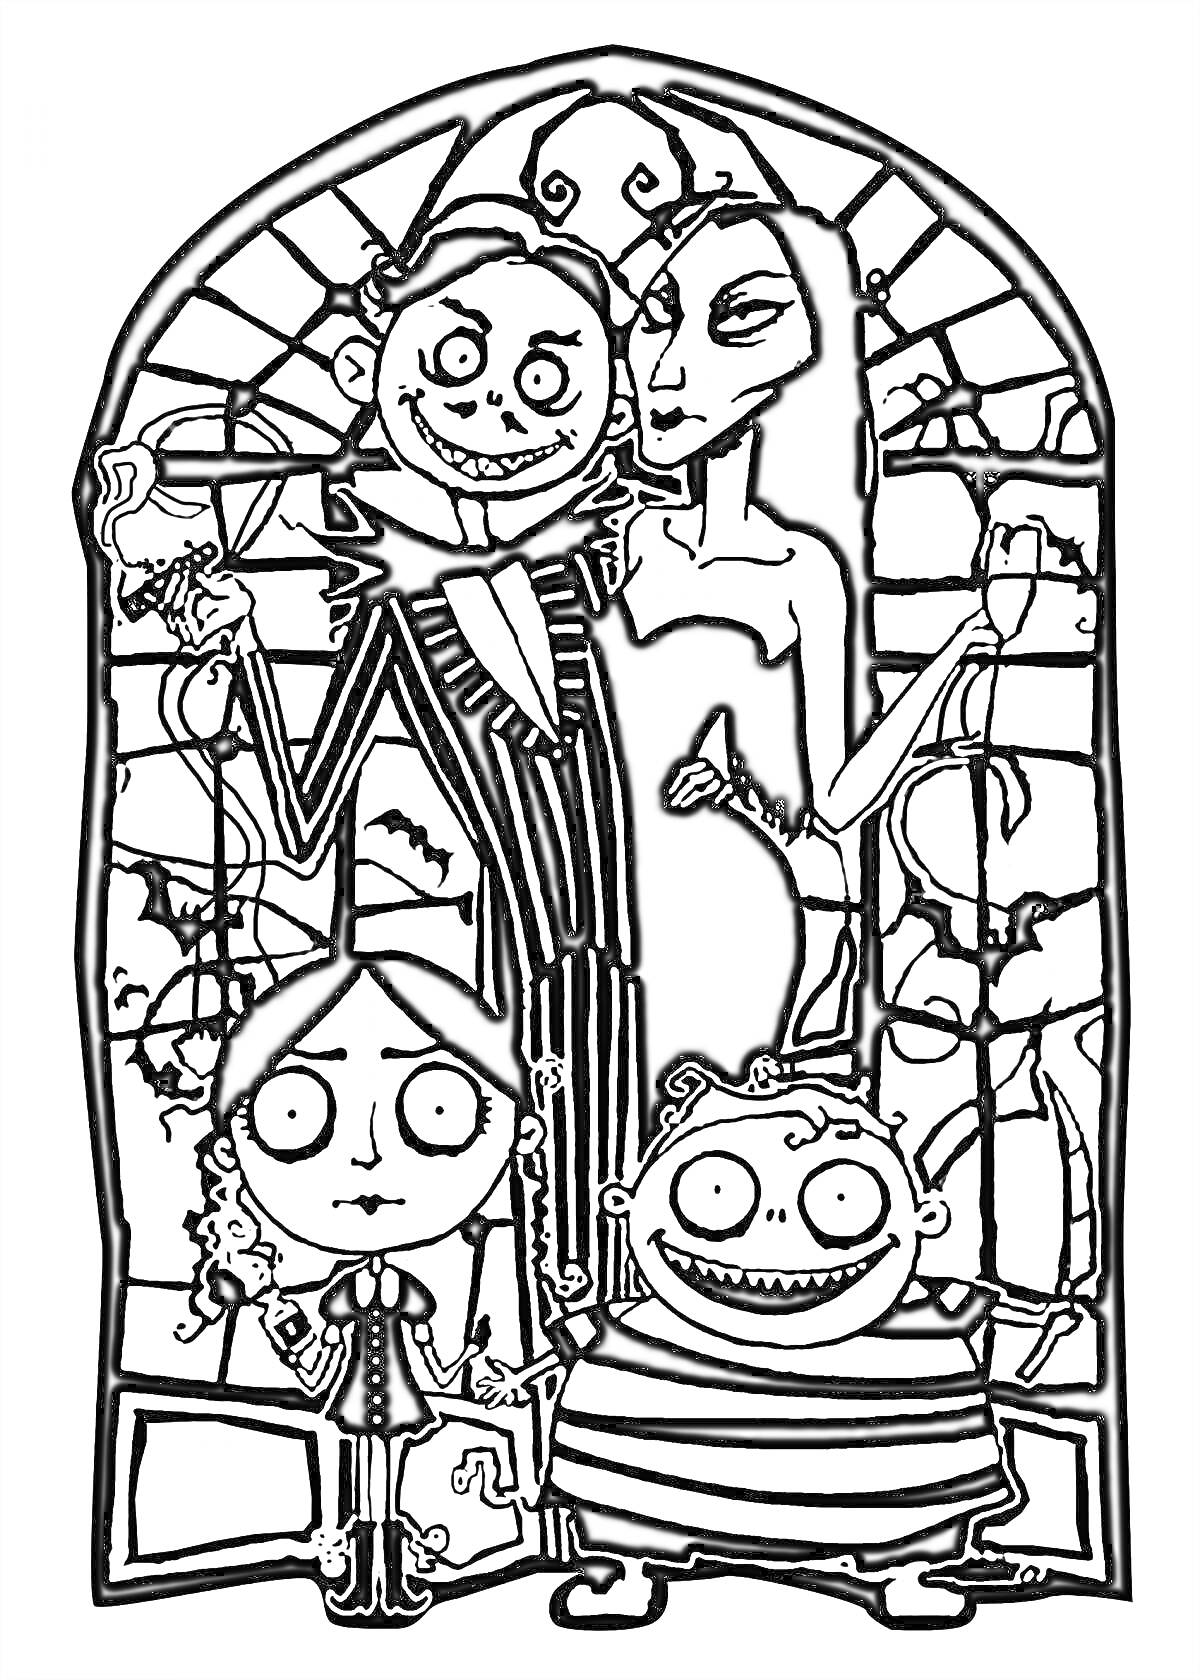 Раскраска Четыре персонажа семейки Аддамс перед витражным окном - мужчина с бокалом и женщиной с длинными волосами, девочка с косичками и мальчик в полосатой рубашке.